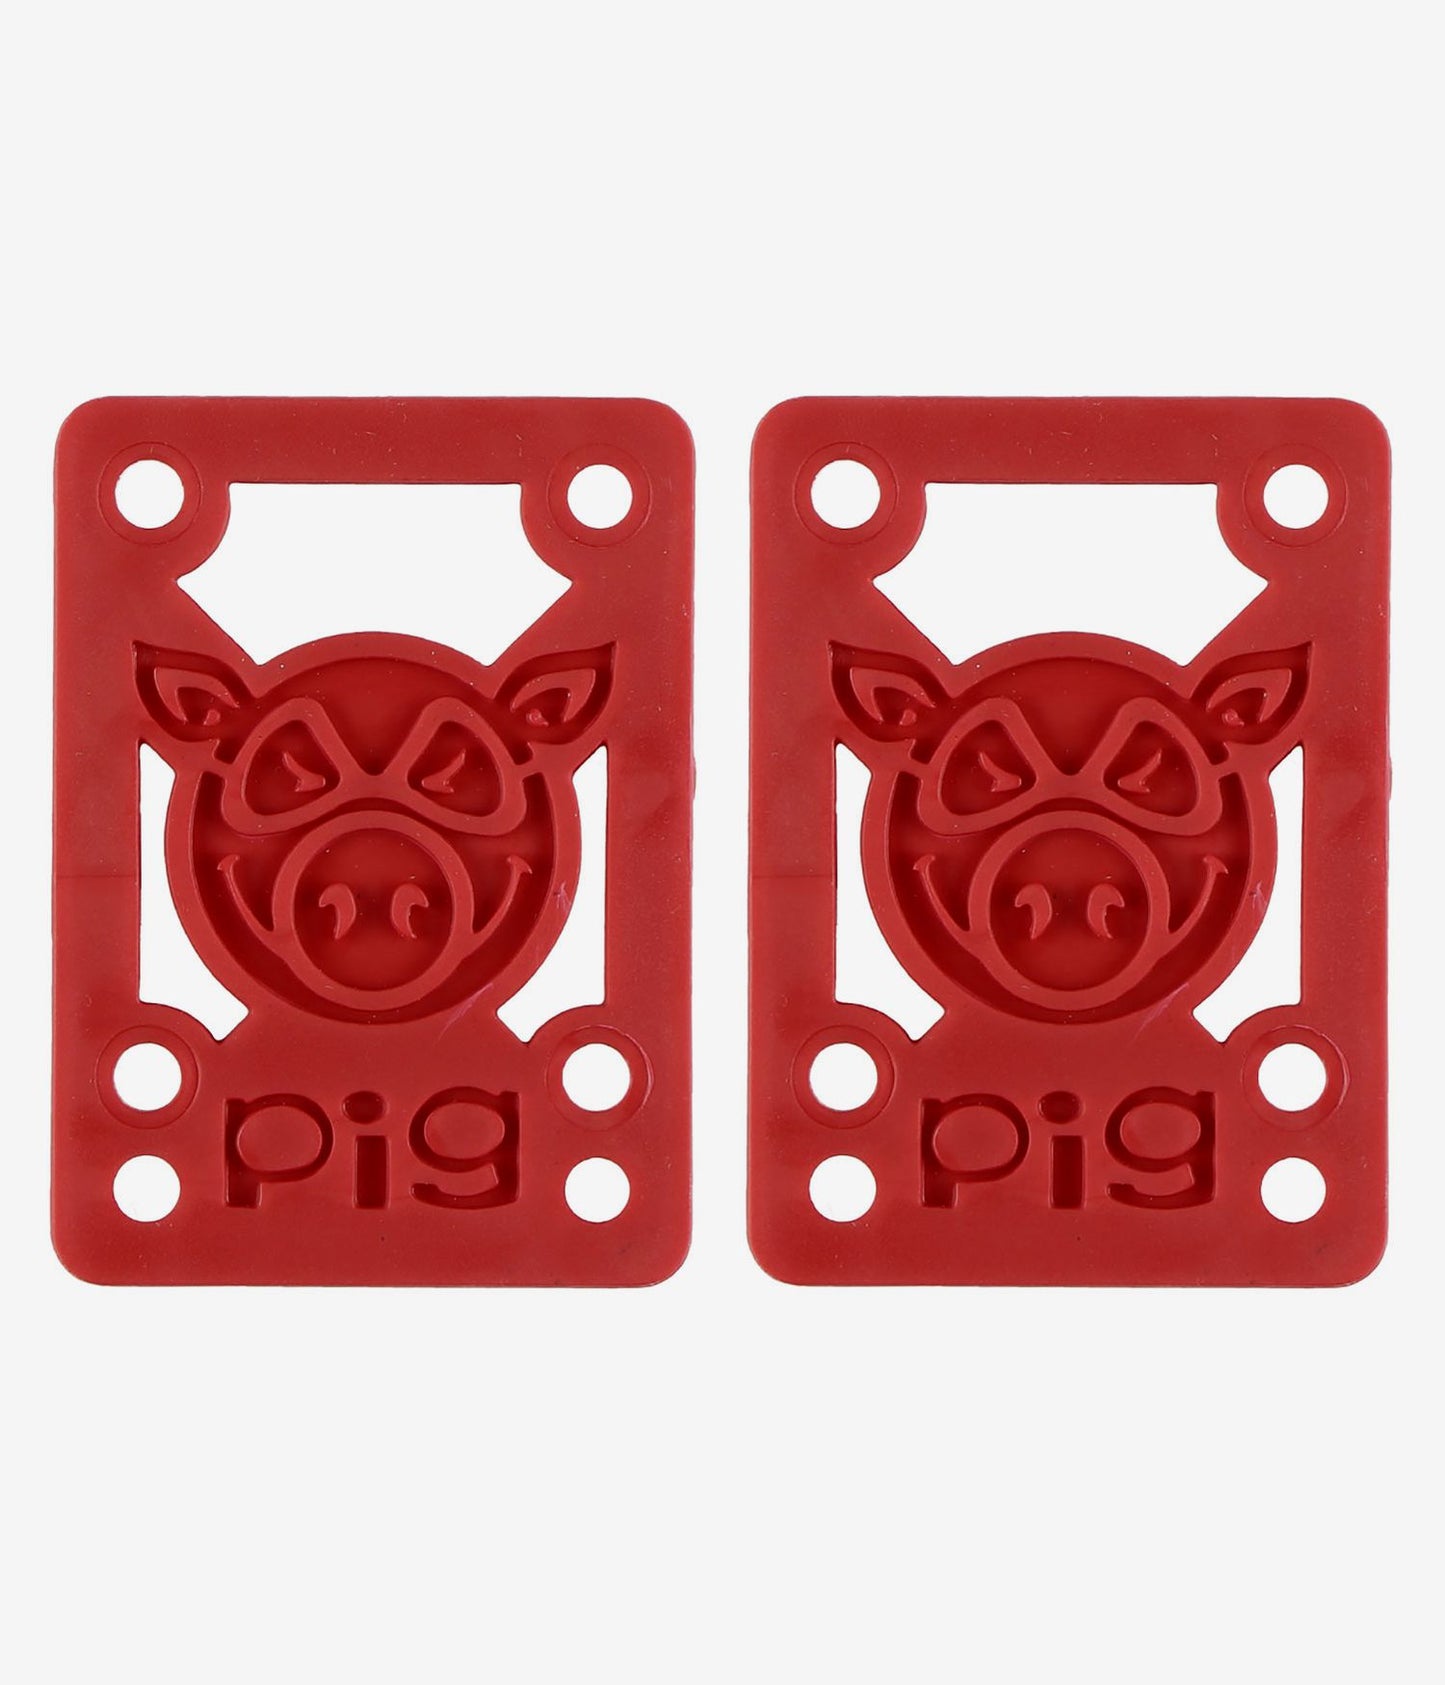 PIG แผ่นรองไรเซอร์ 1/8" - สีแดง